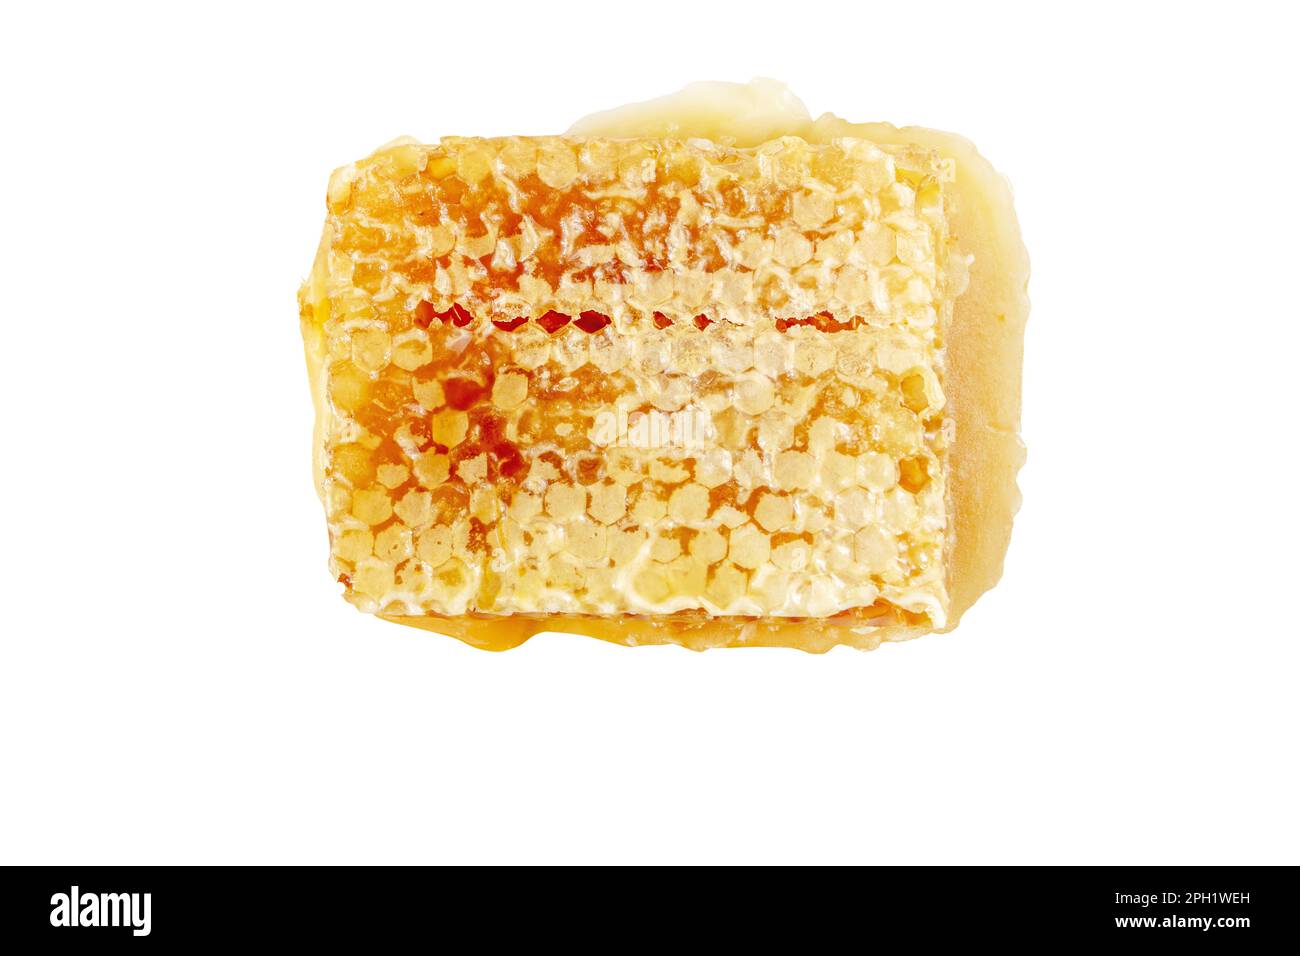 Honig in den Wabenhexagonalzellen aus weiß isoliertem Wachs. Kammhonig. Stockfoto